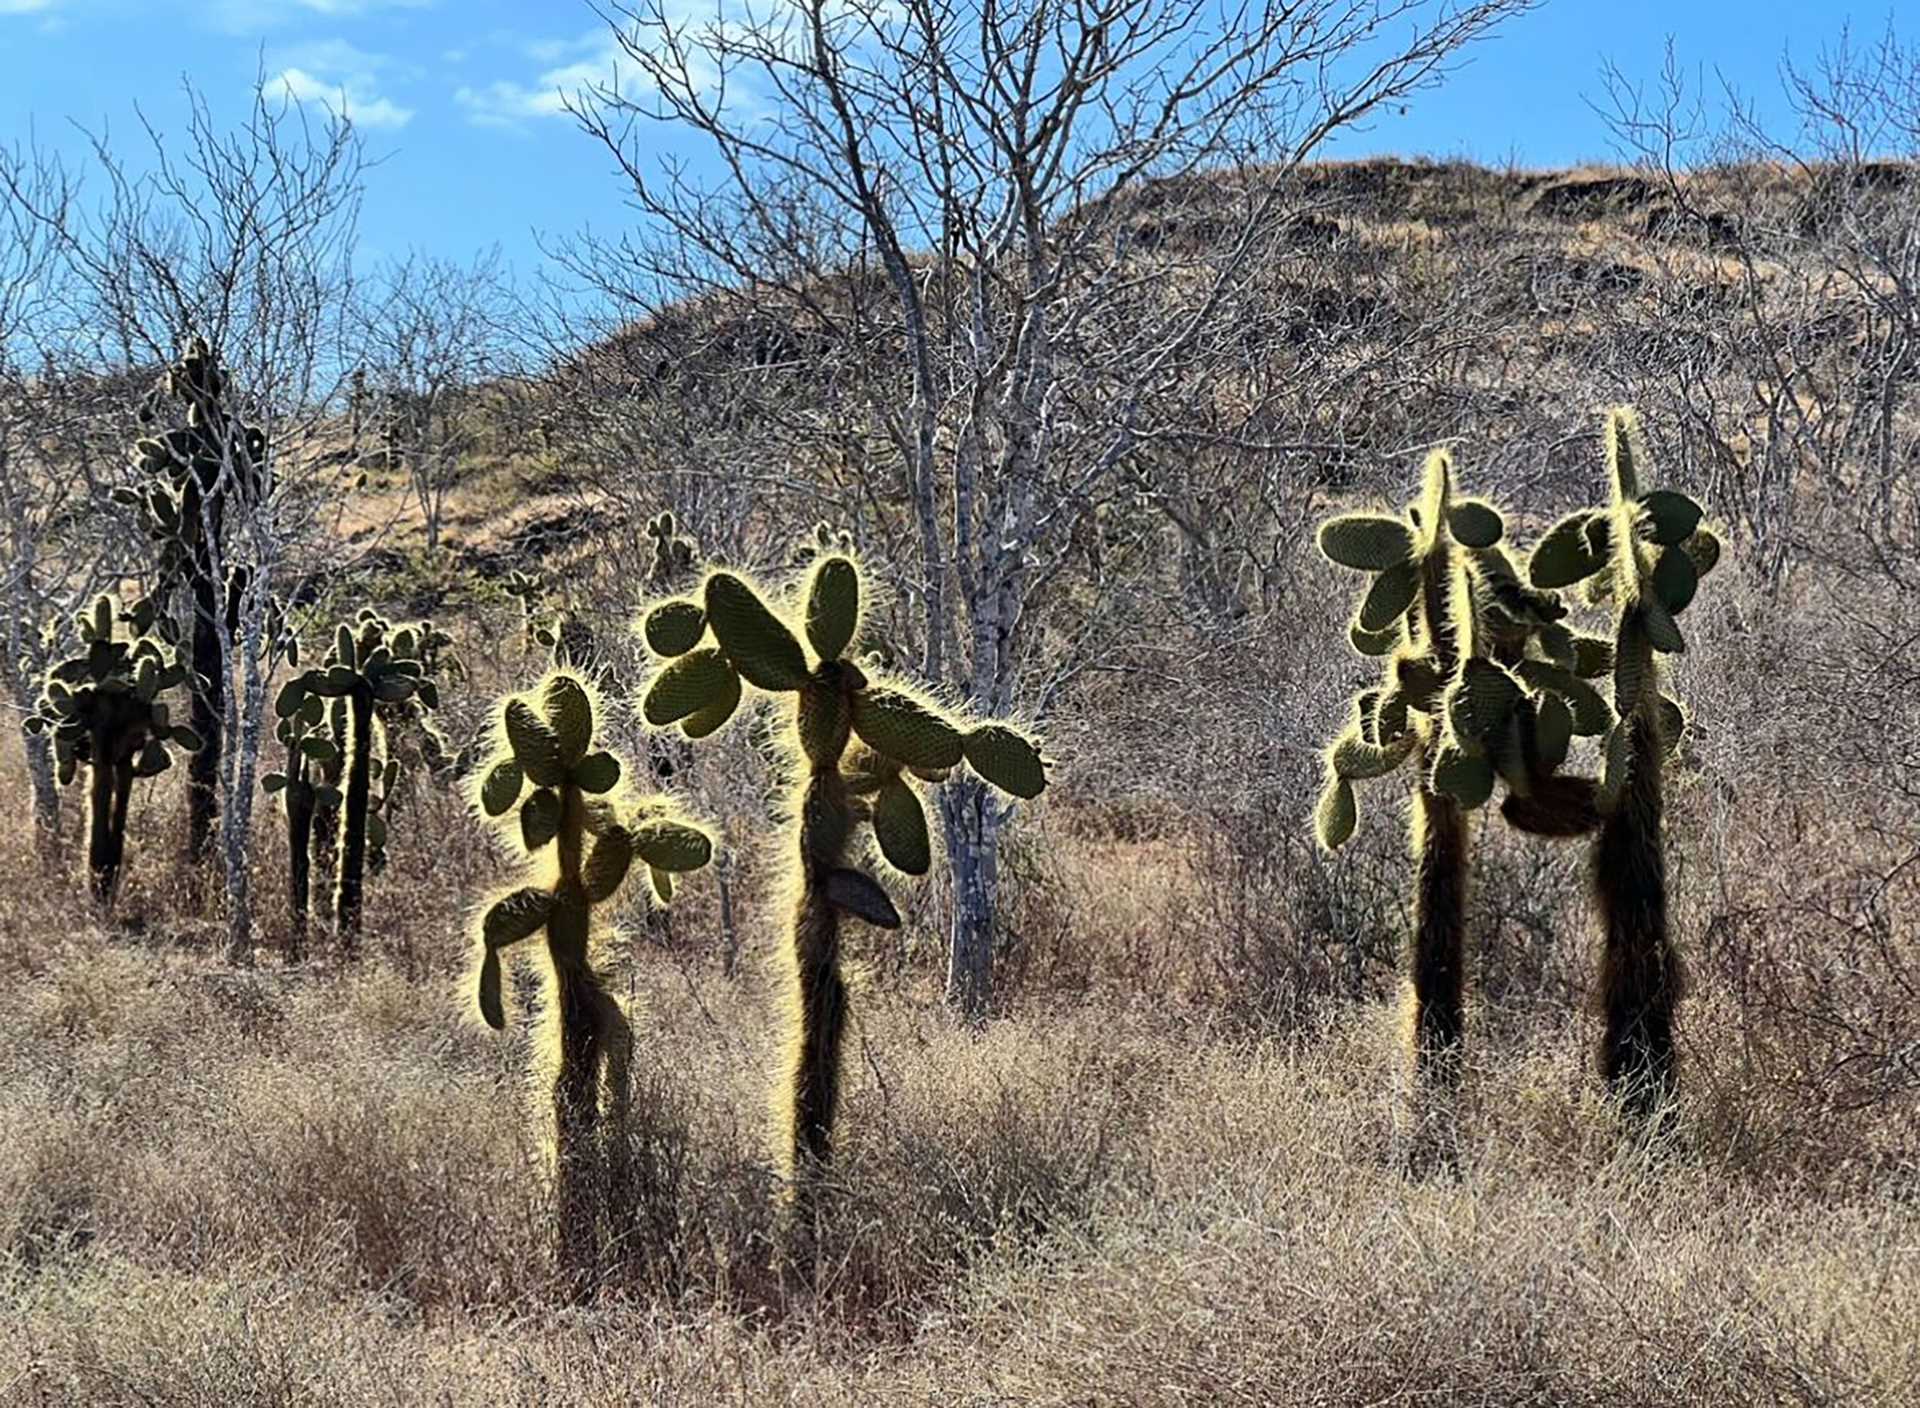 cactus thorns 